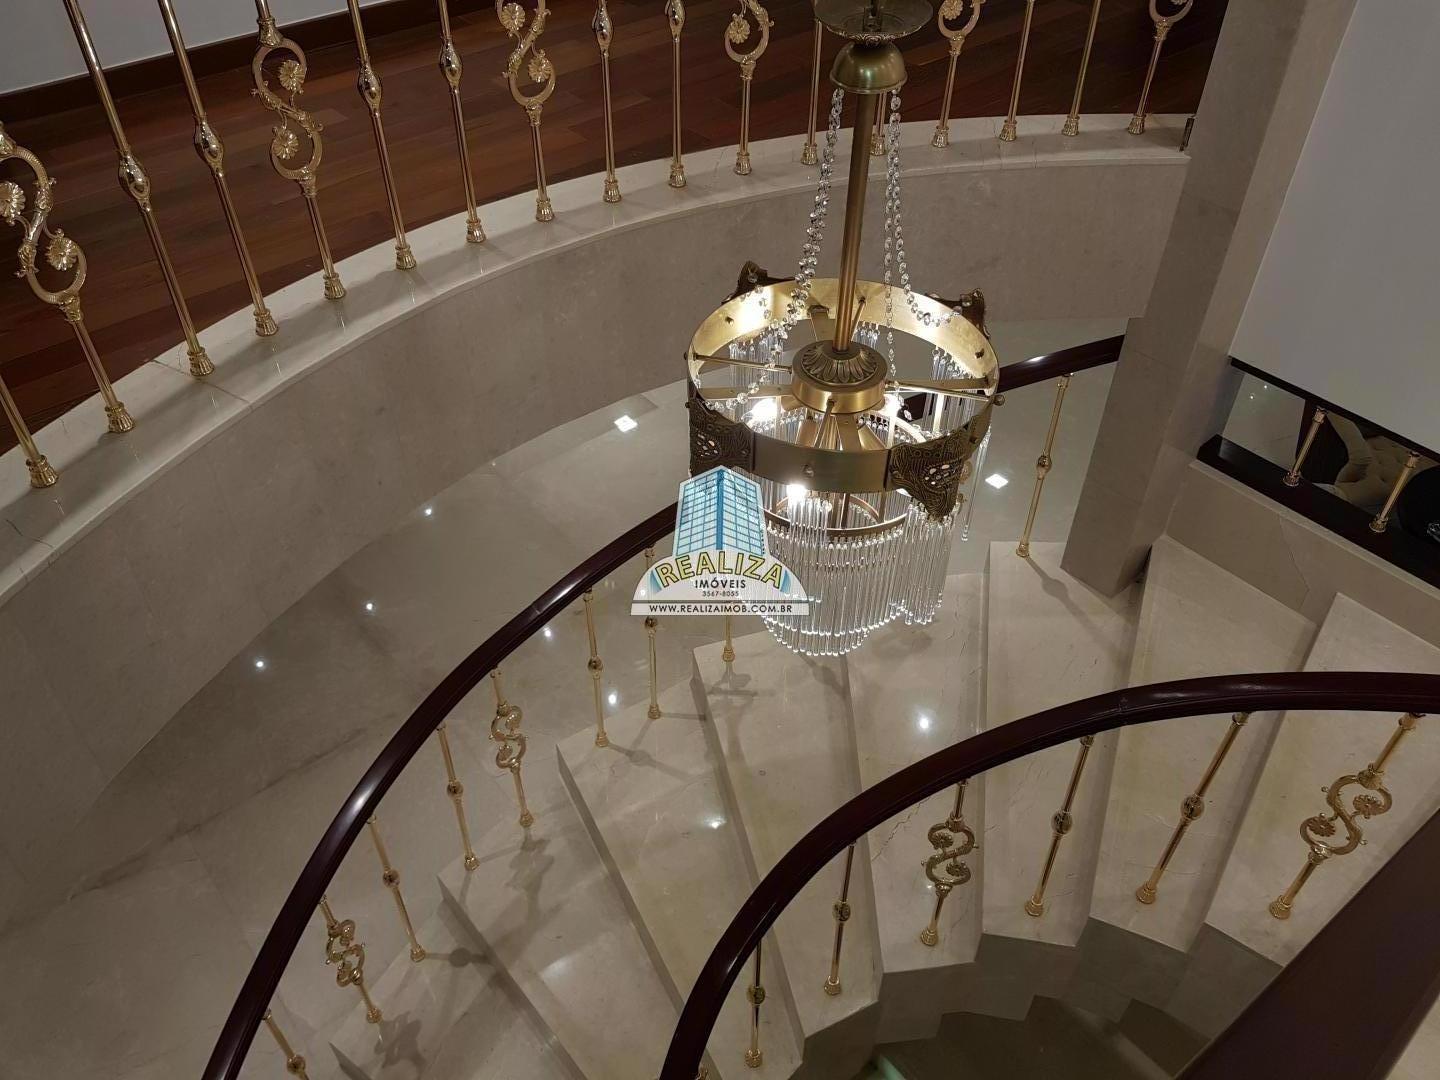 QL 06 Ponta de picolé mansão luxo mobiliada com elevador, novíssima, construída há cinco anos, 